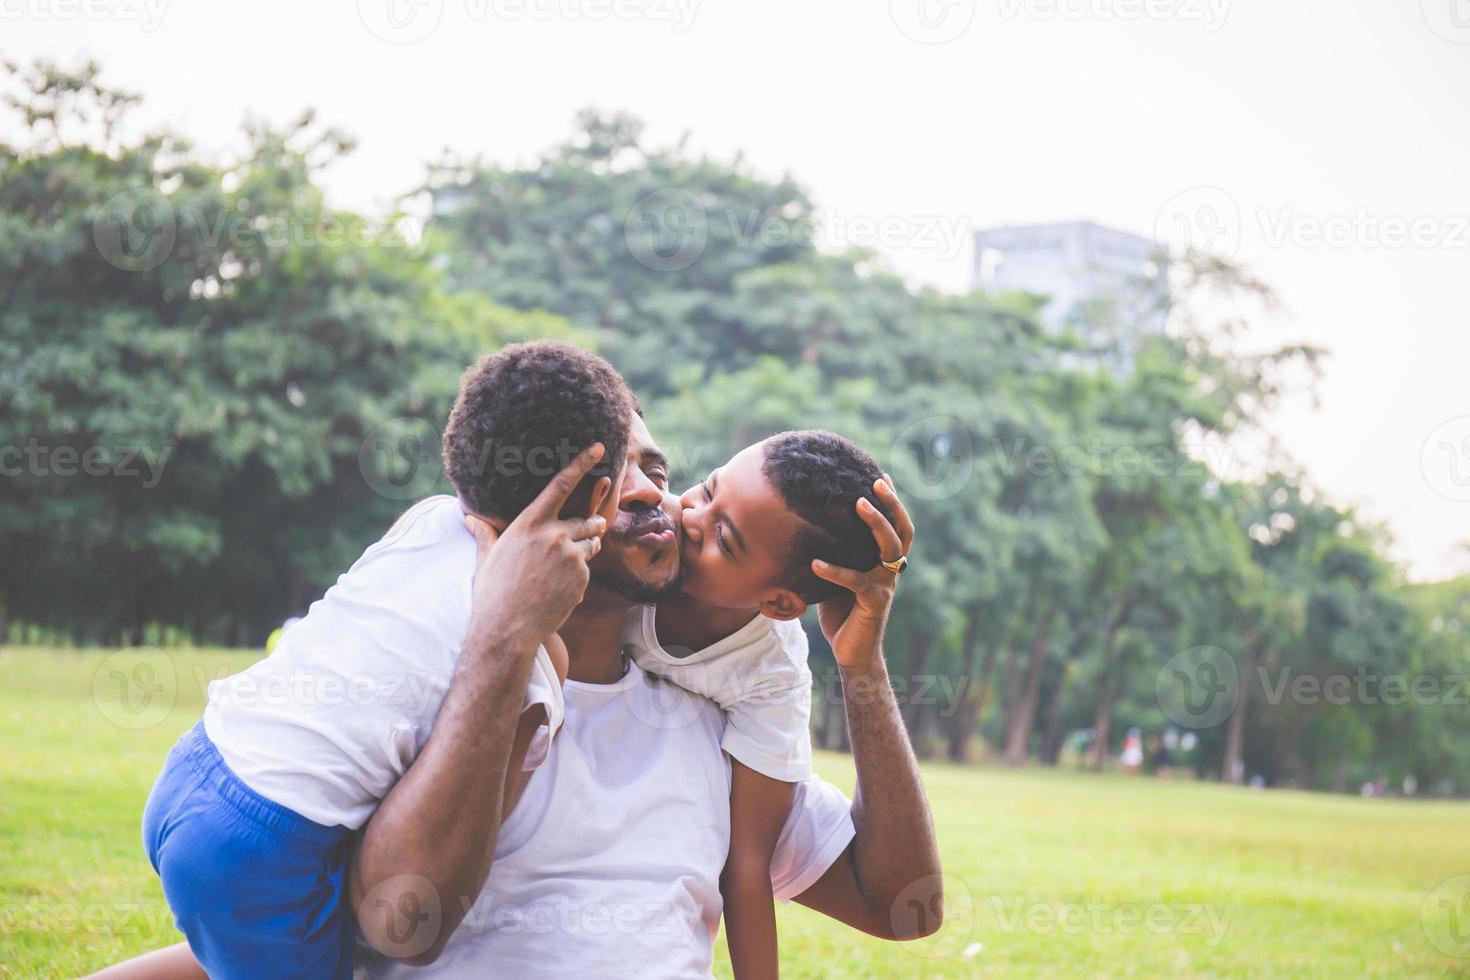 Africano menino bonitinho no pai beijando casual no parque. feliz pai afro-americano brincando ao ar livre com filho, alegre conceito de família negra. foto